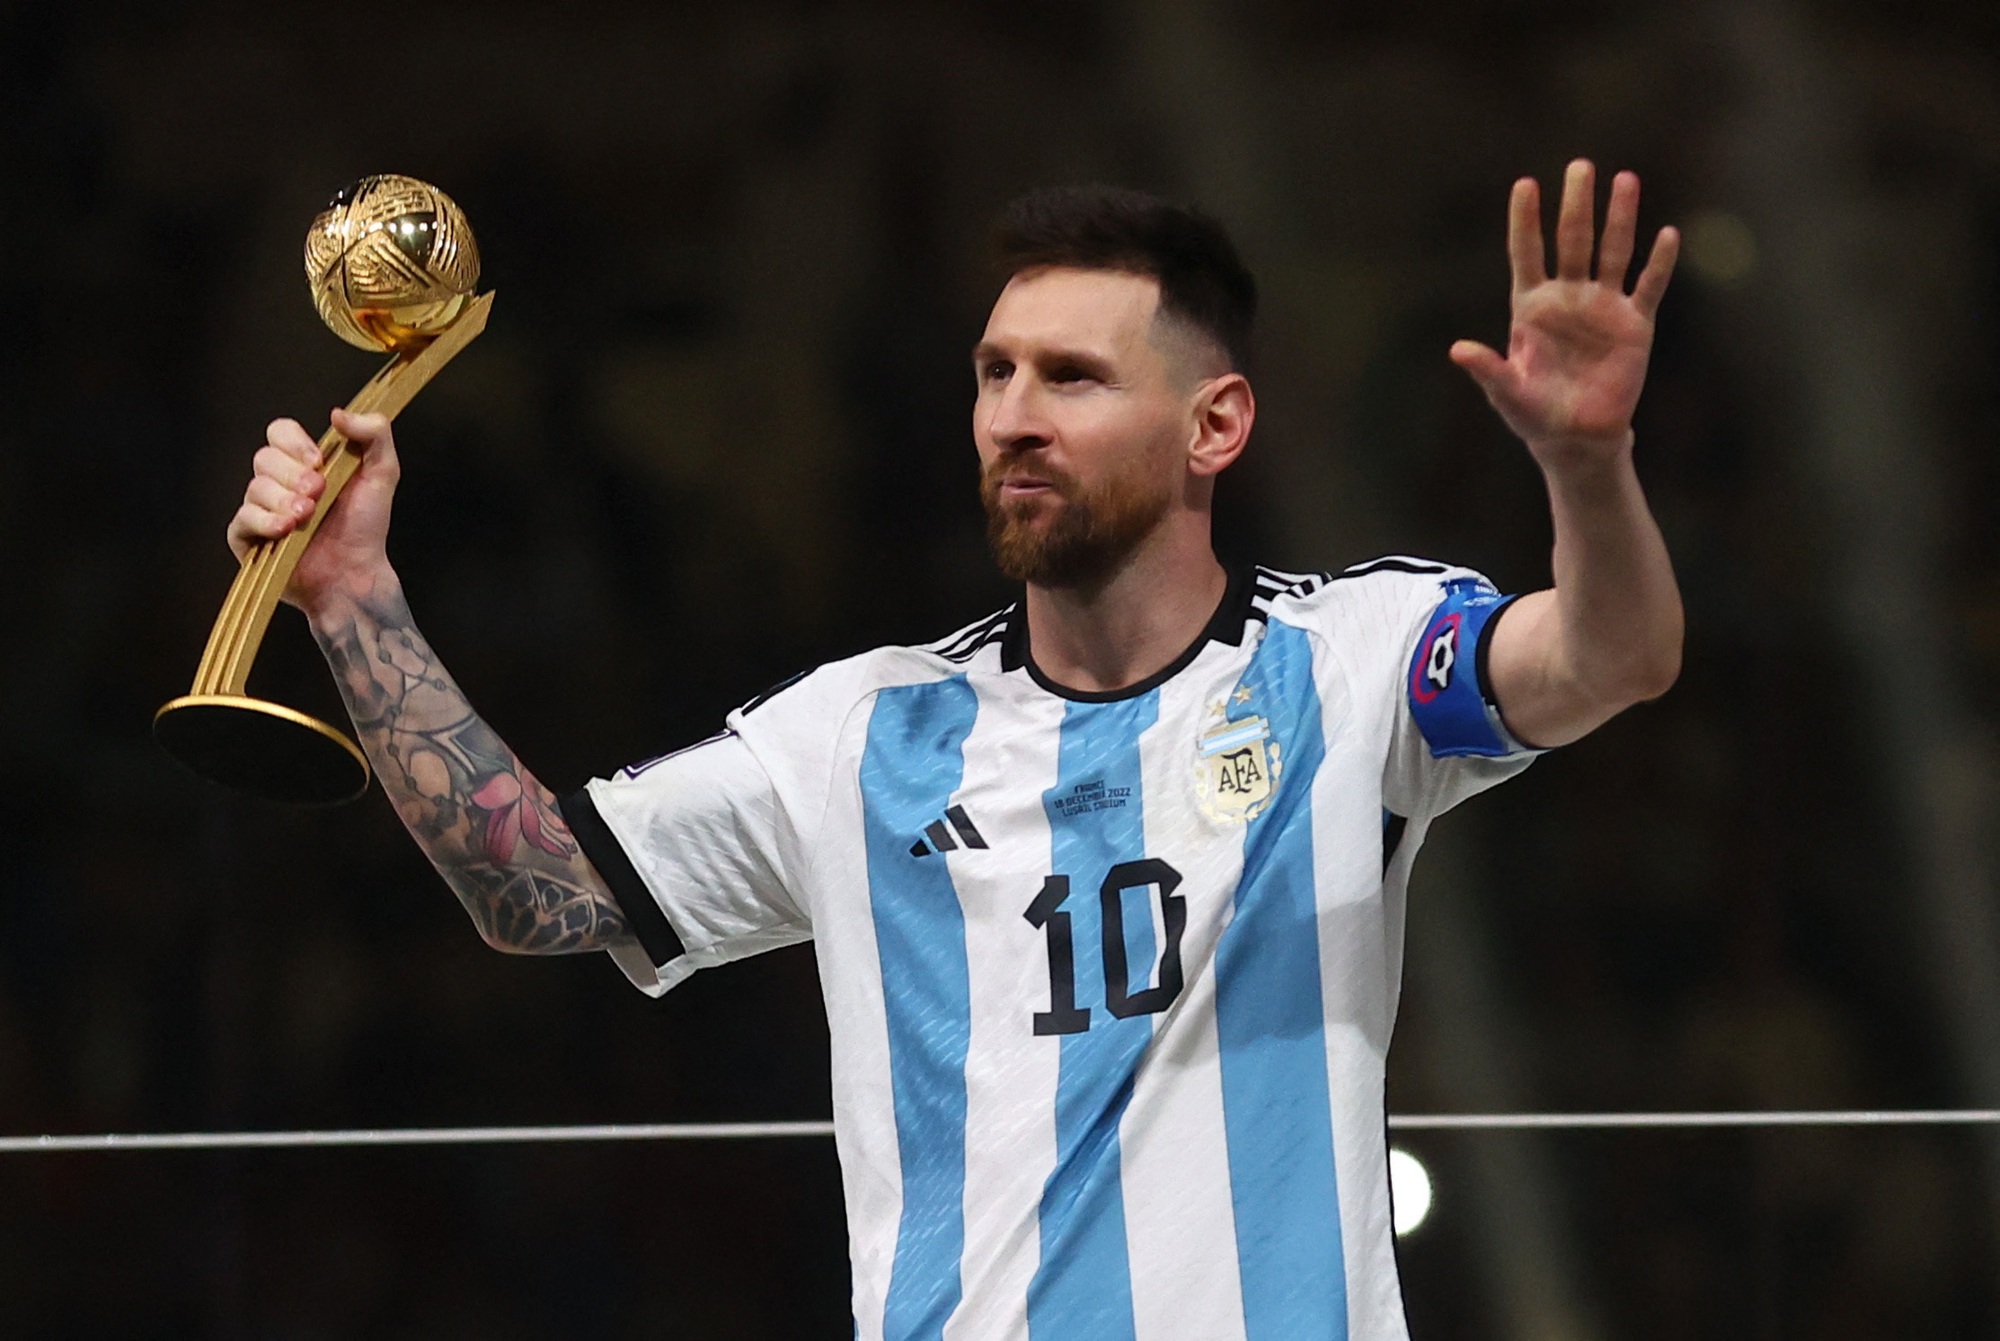 Messi đã chia tay tuyển Argentina nhưng hành động này không làm giảm tình yêu của các fan dành cho anh. Hãy cùng xem lại những khoảnh khắc đáng nhớ của Messi trong màu áo đội tuyển.